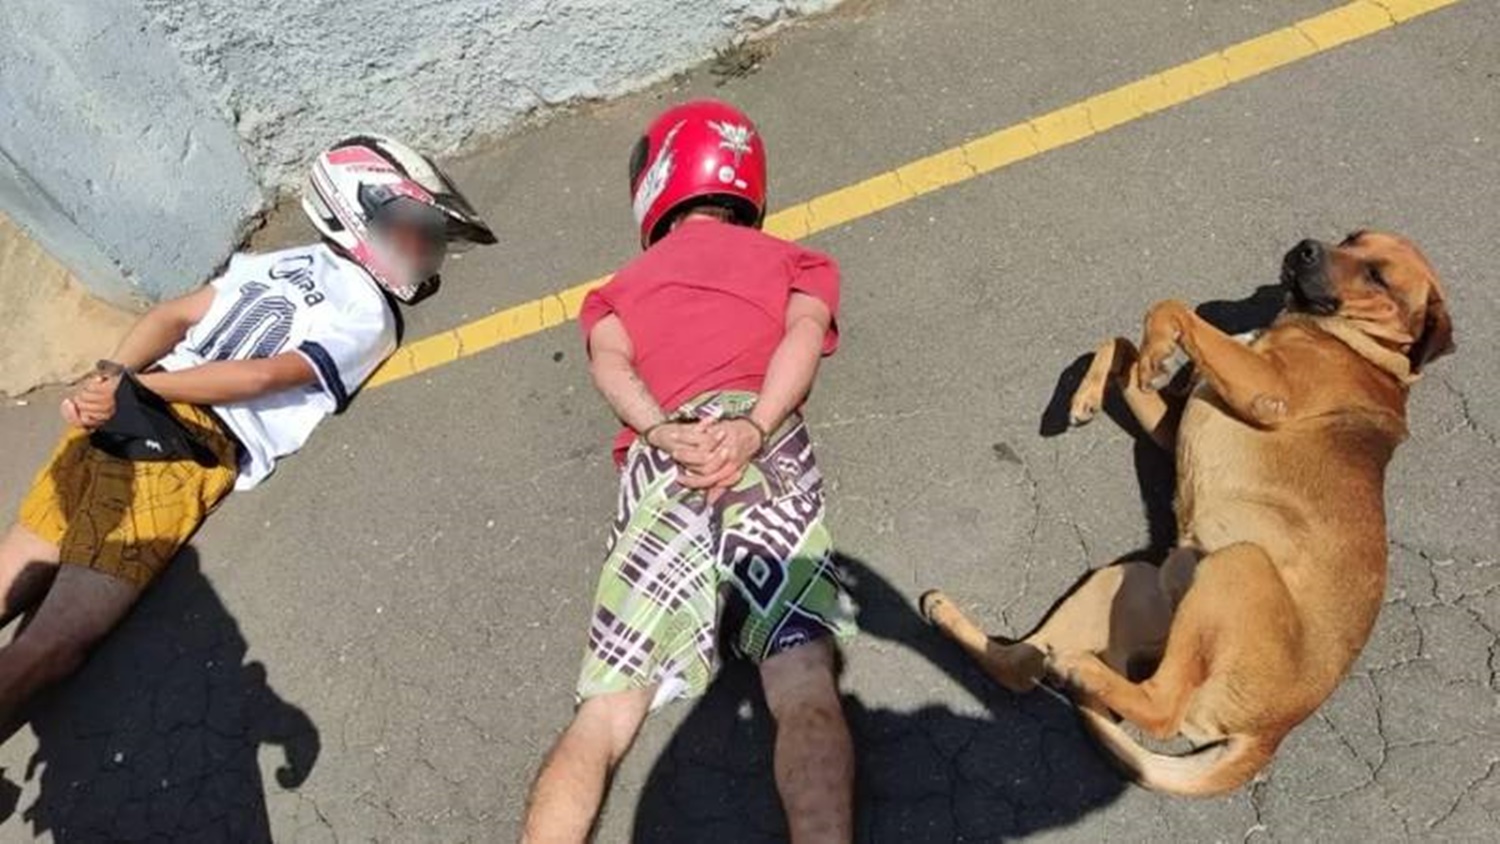 SE RENDEU: Cachorro deita no chão junto com suspeitos durante abordagem da PM